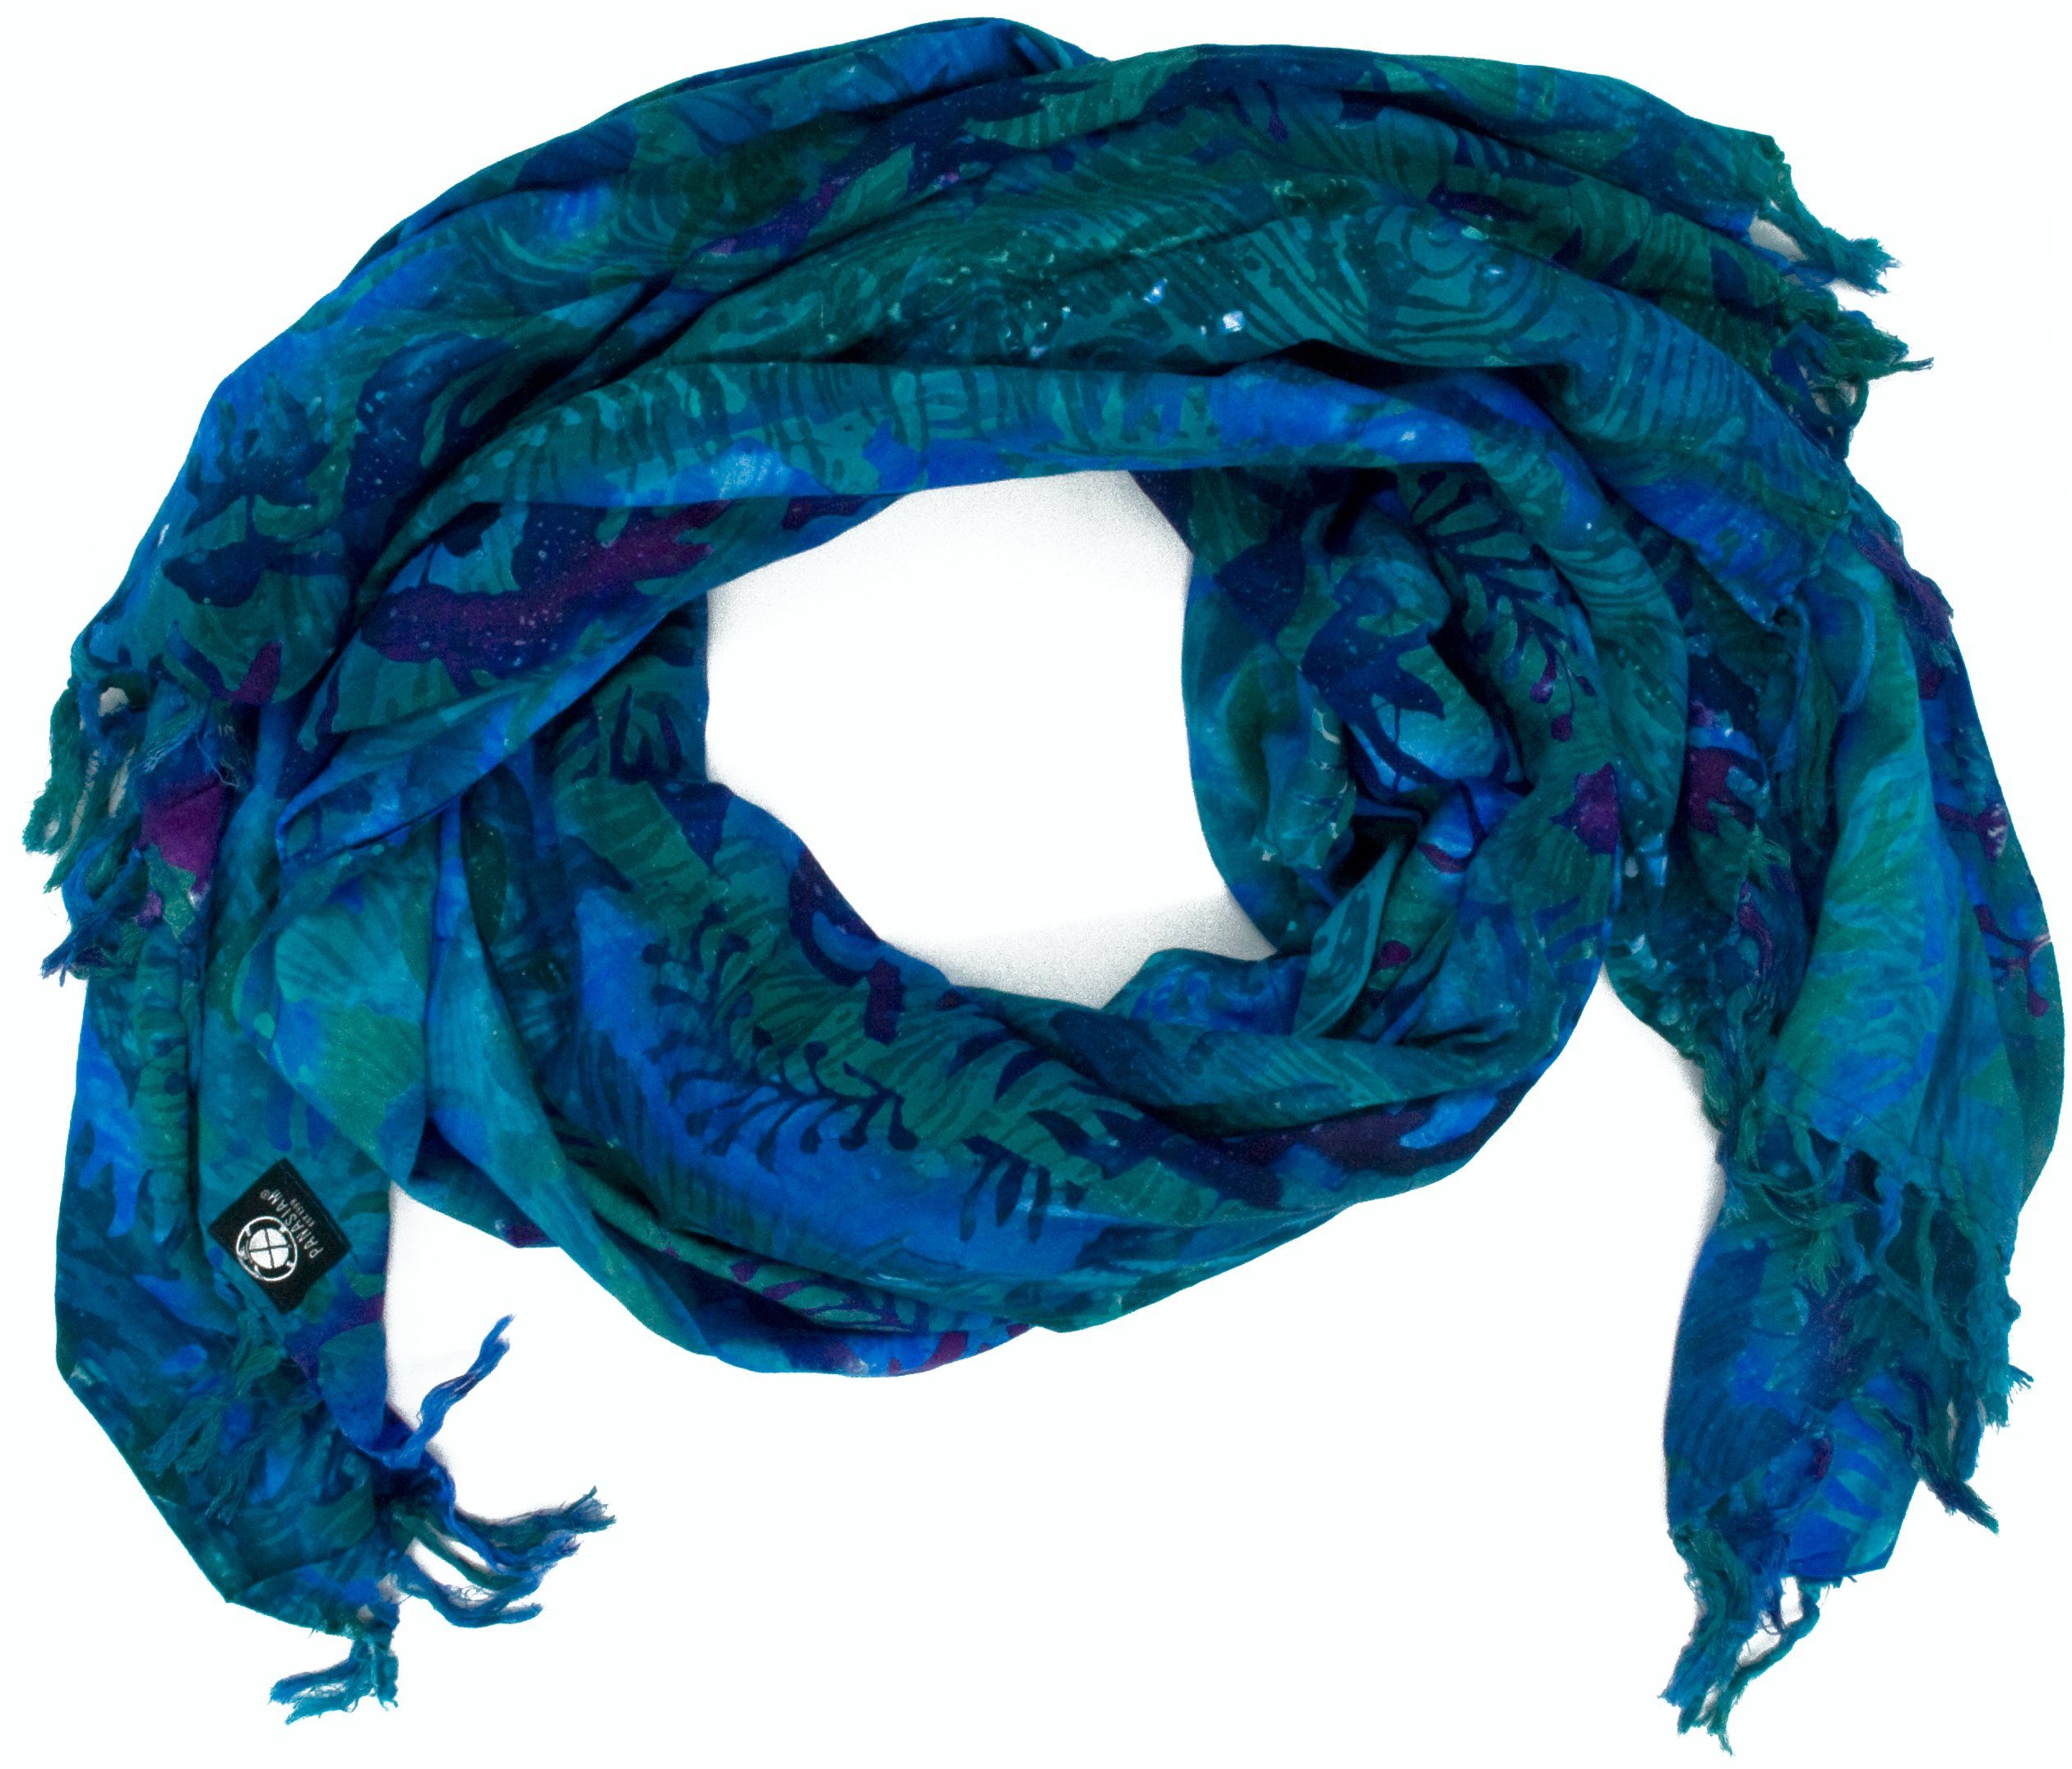 PANASIAM Halstuch sommerlicher Kuschelschal aus hochwertiger Viskose gut als Stola, Schultertuch Schal aber auch als Strandtuch oder Wickelrock tragbar B112 blue